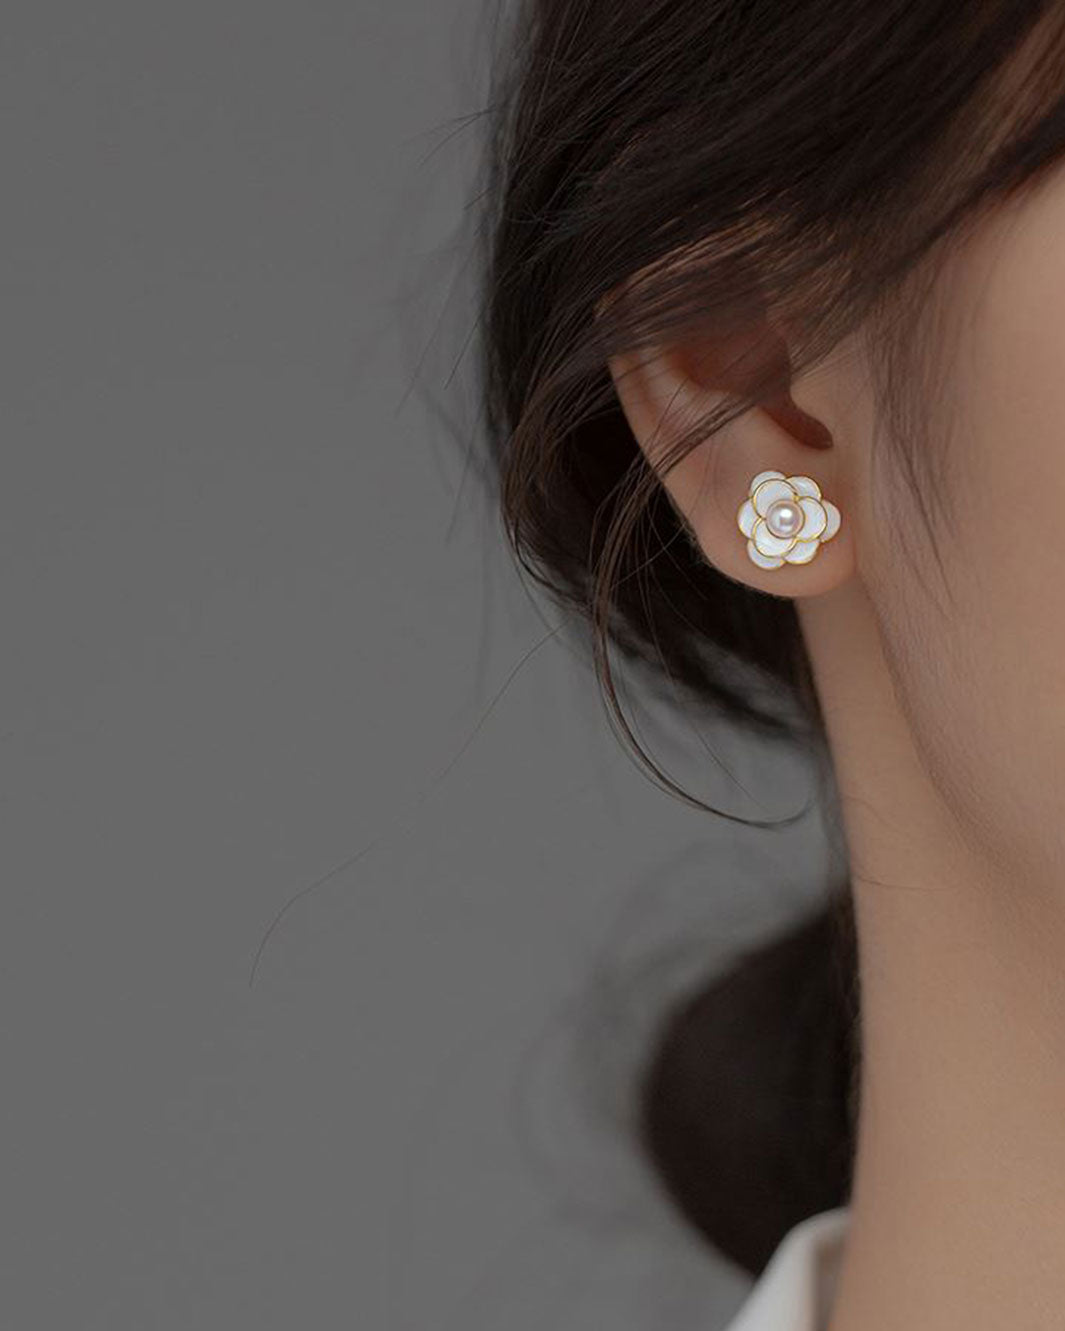 White Camellia Stud Earrings